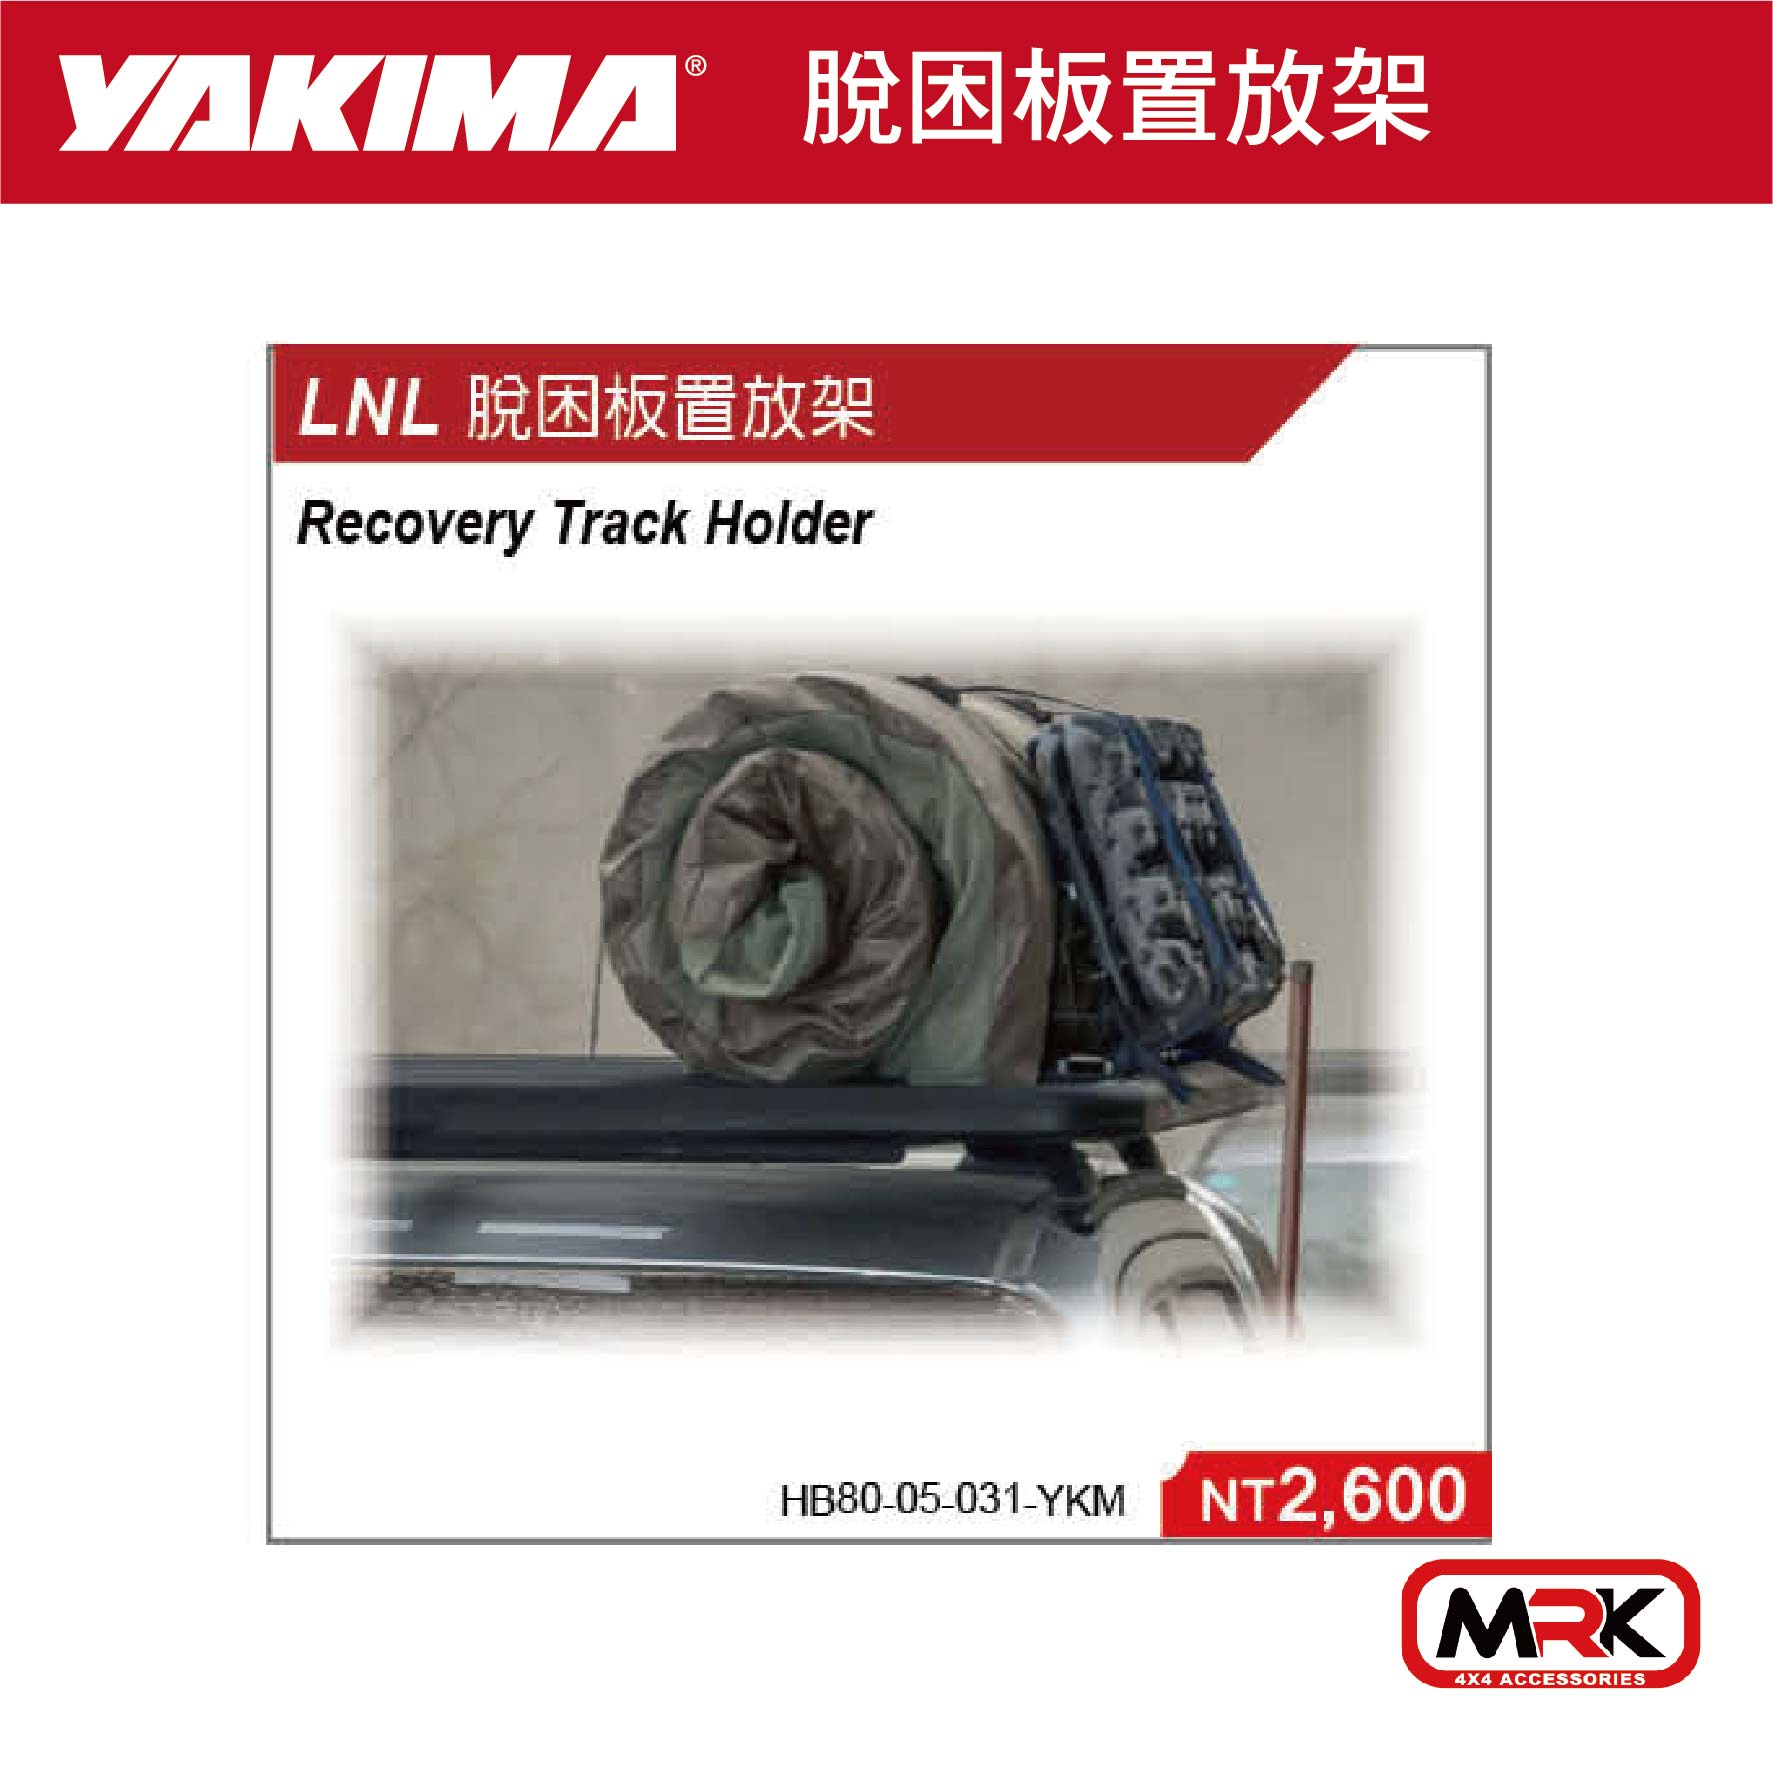 【MRK】YAKIMA locknload LNL 脫困版置放架 HB80-05-031-YKM